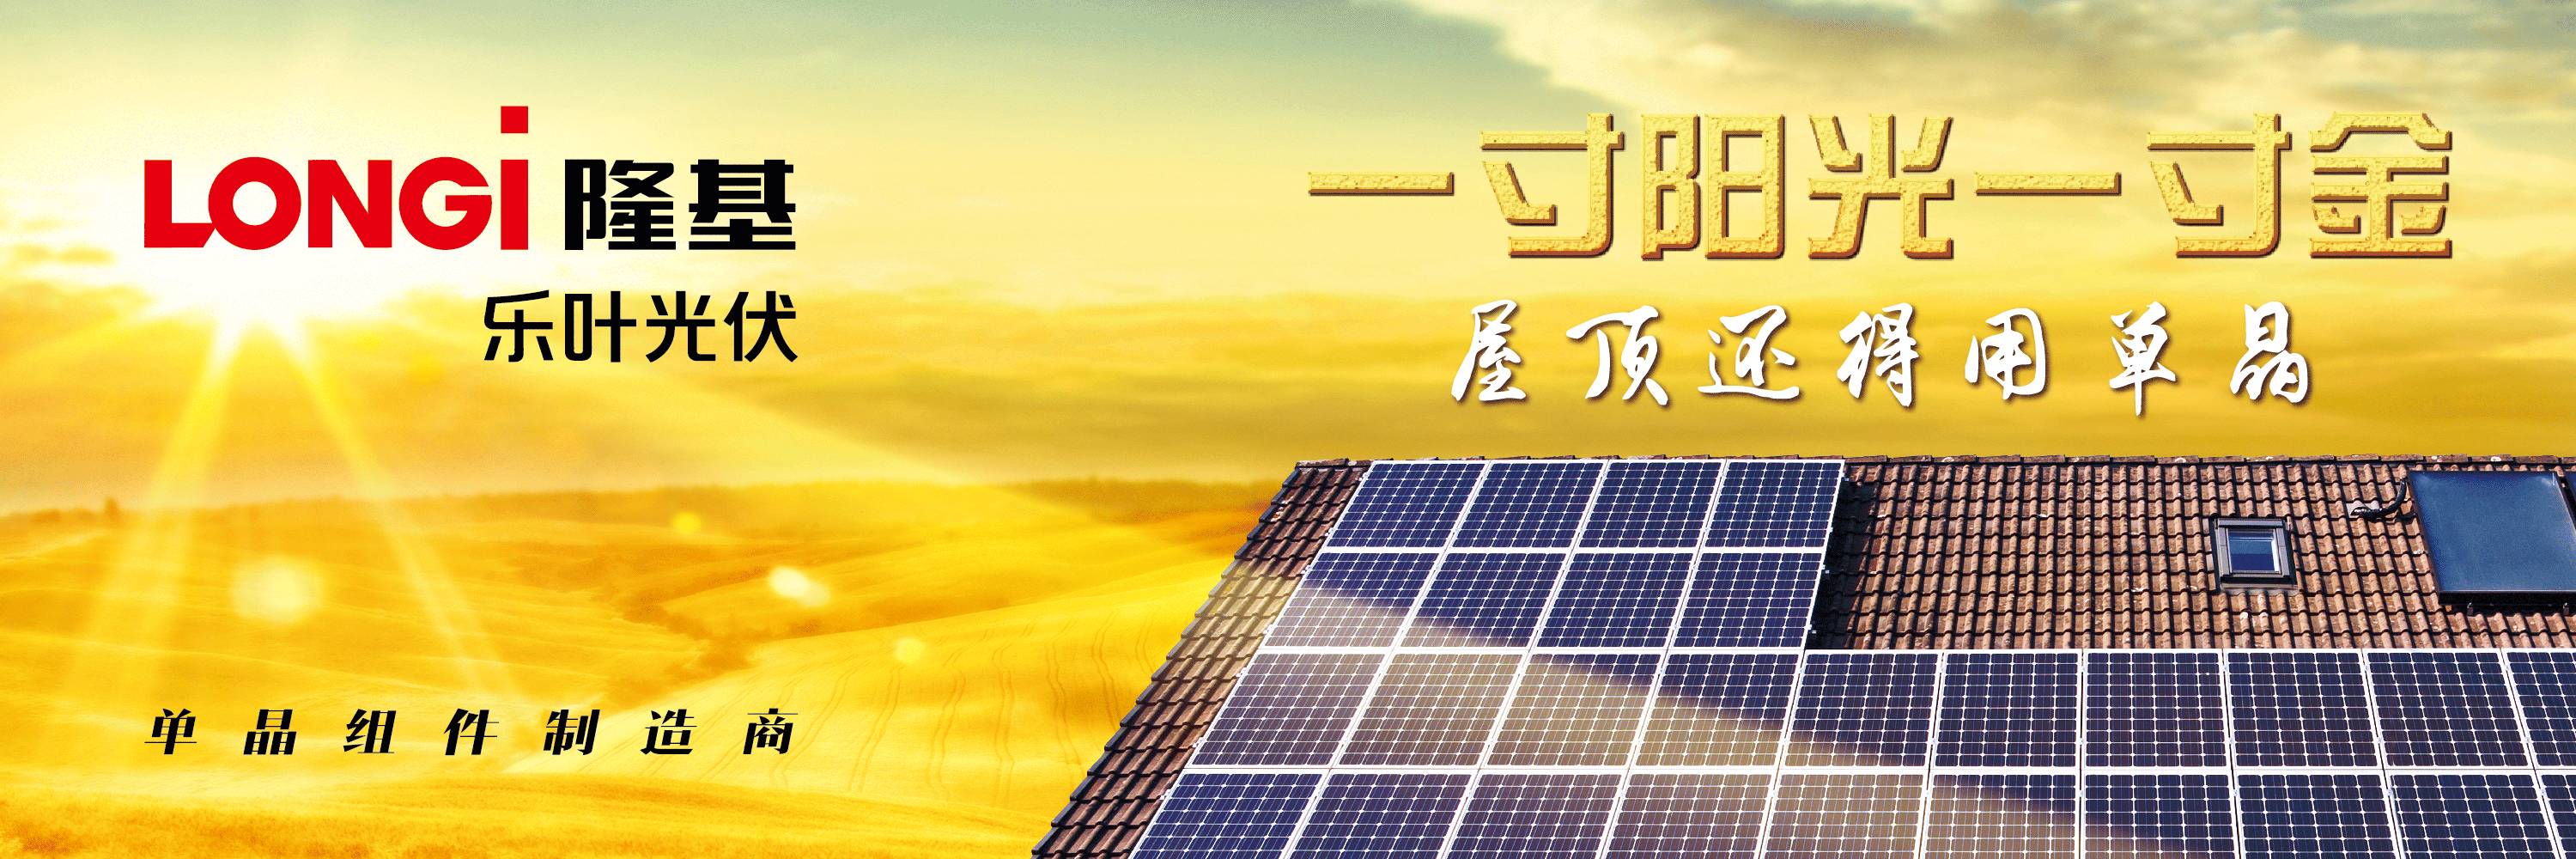 电竞菠菜外围app:
电力规划设计总院首次发布中国能源发展报告2016(组图